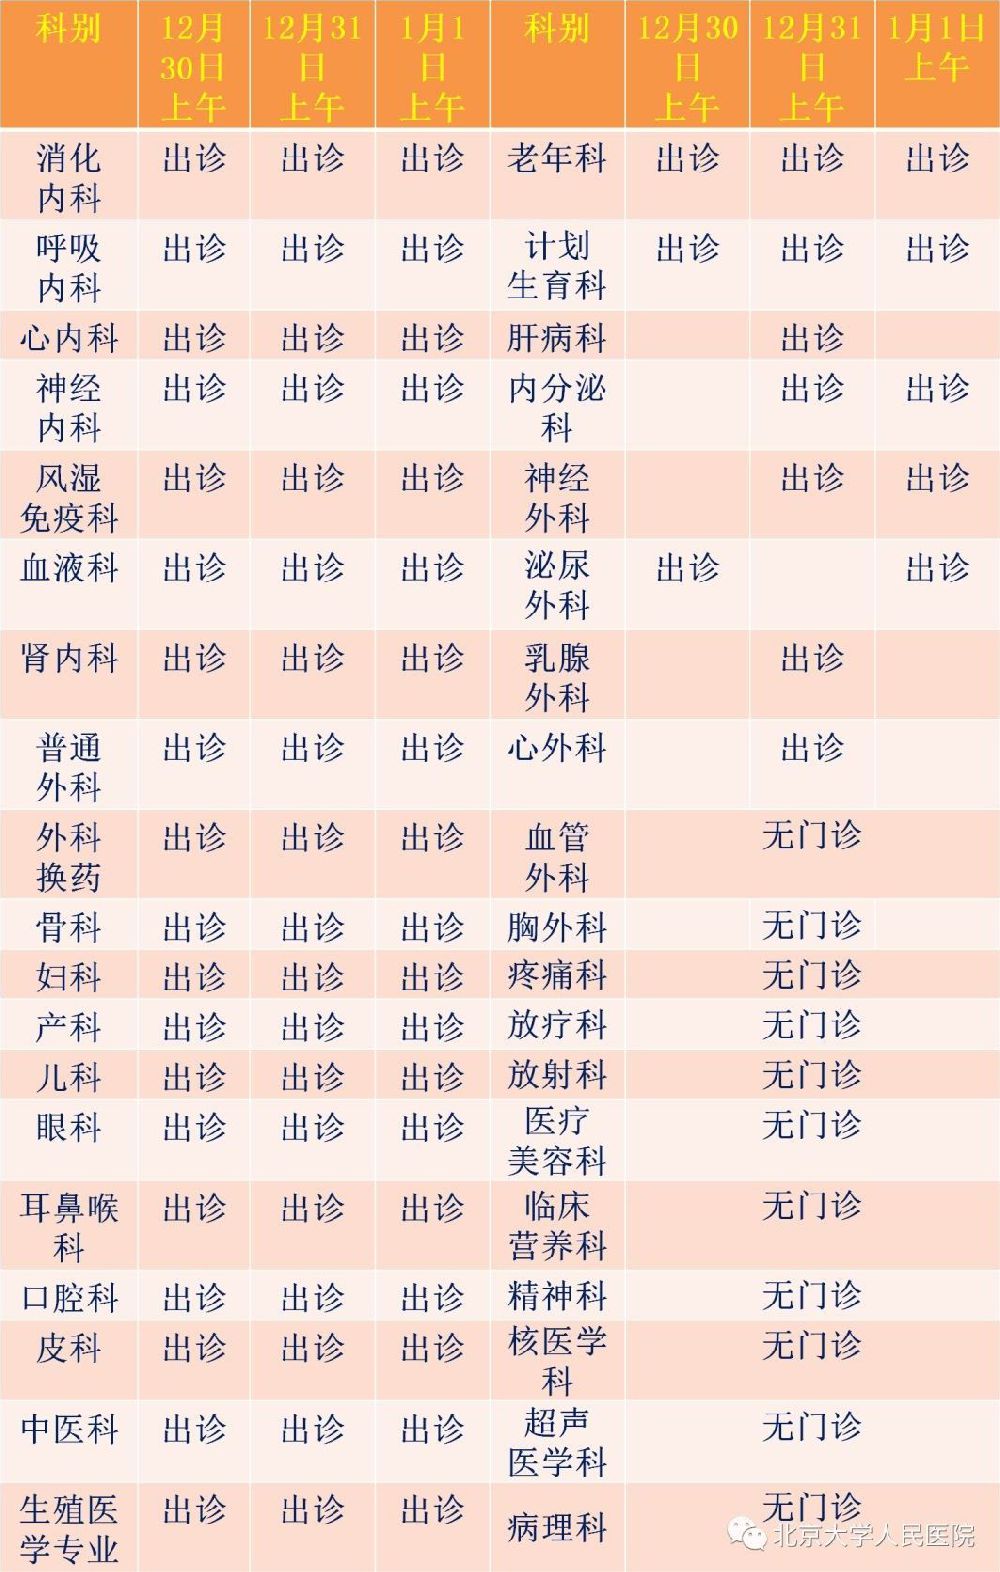 北京大学人民医院元旦假期门急诊安排